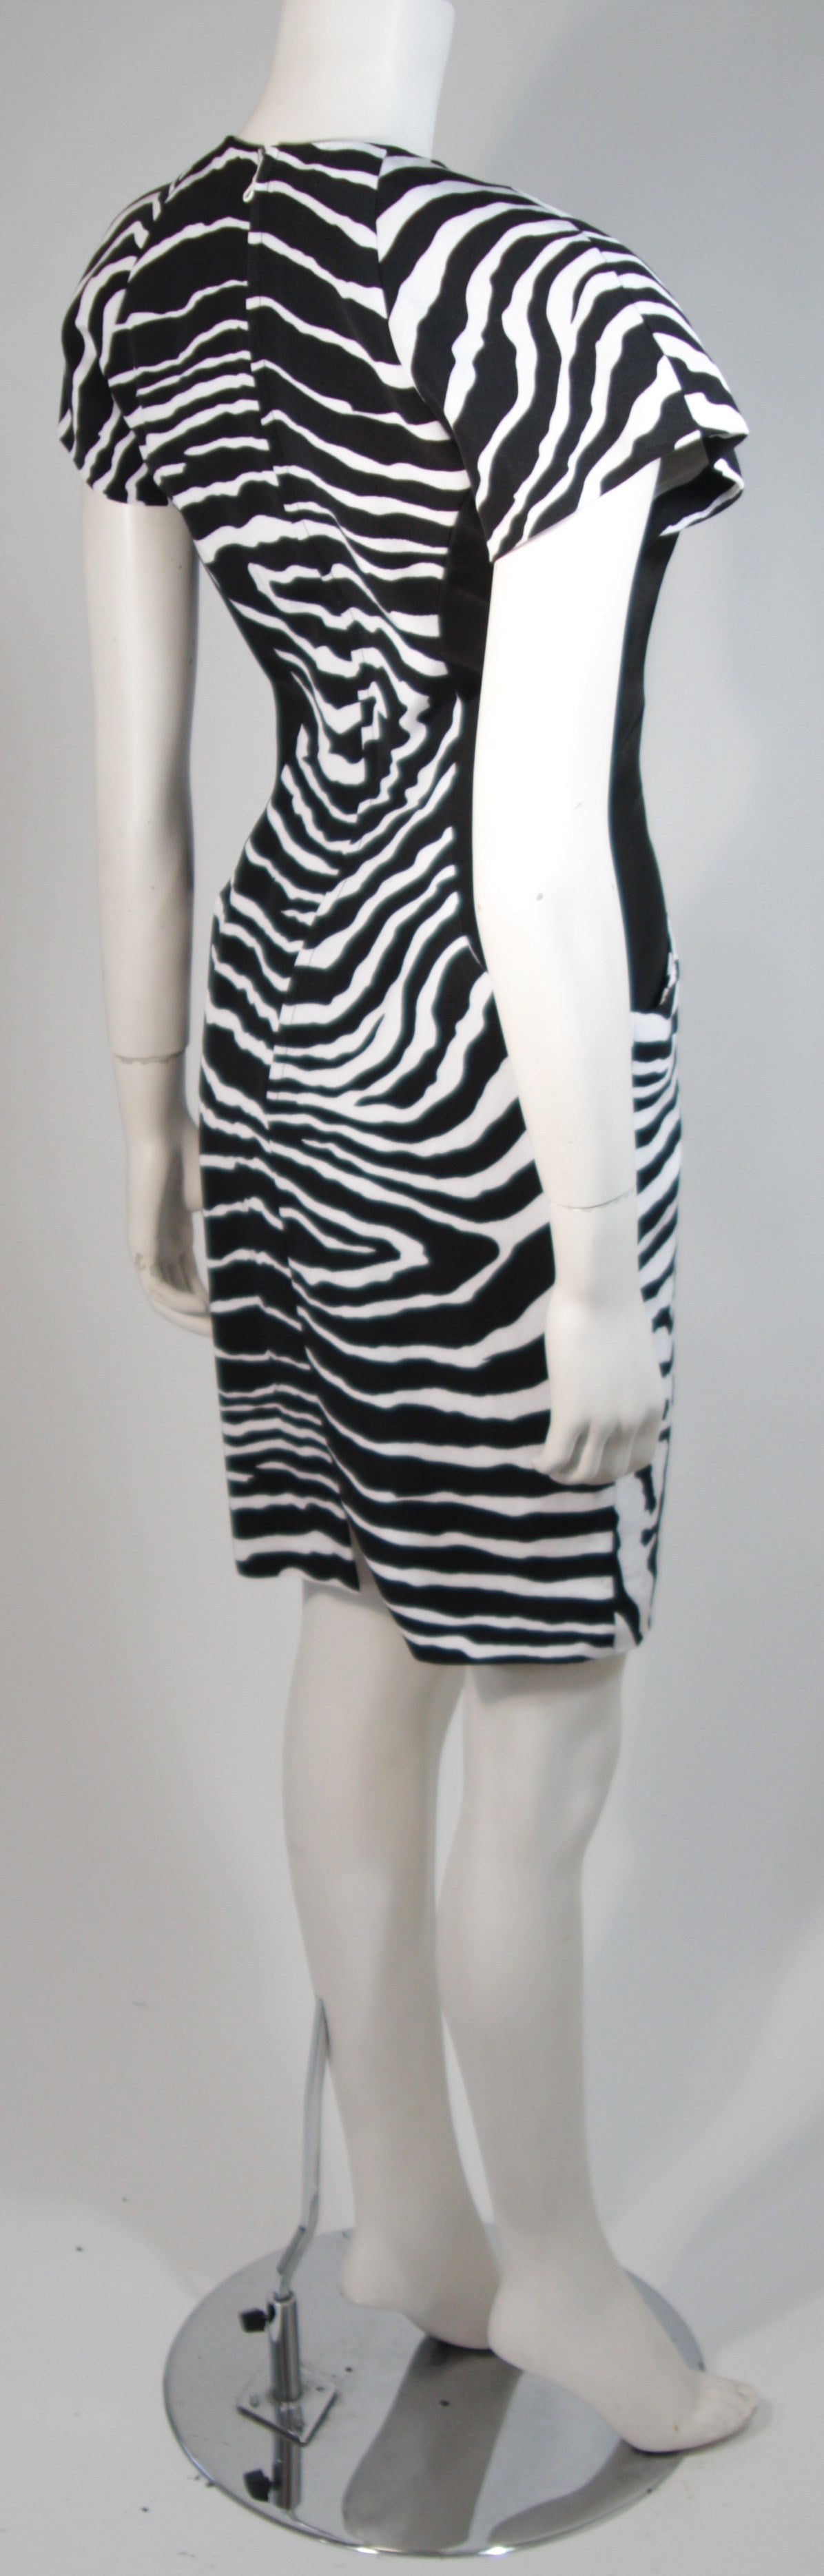 Vicky Tiel Black and White Zebra Patterned Cocktail Dress Size Small 3